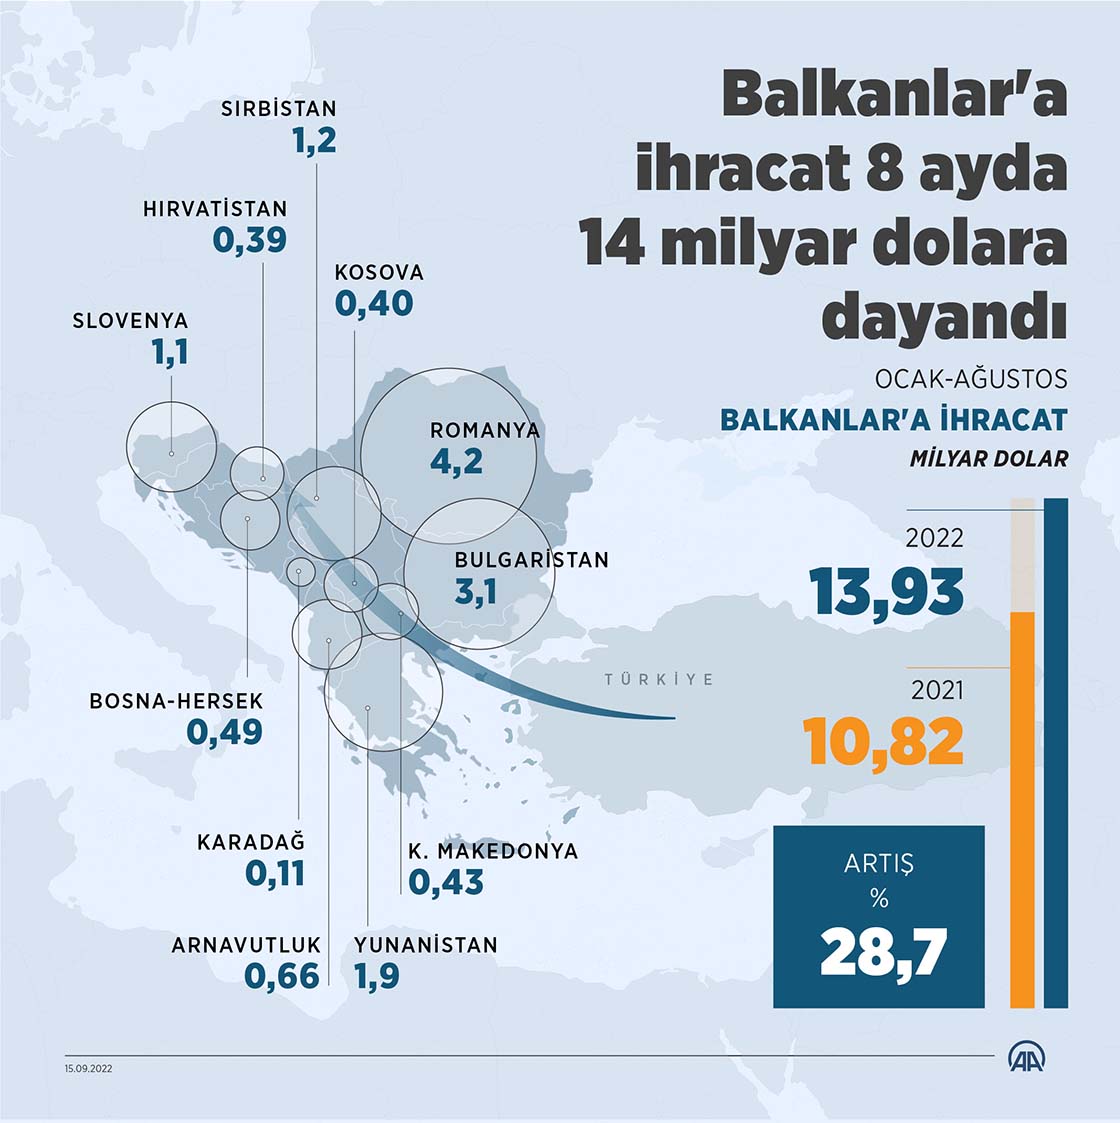 Balkanlar'a ihracat 8 ayda 14 milyar dolara dayandı